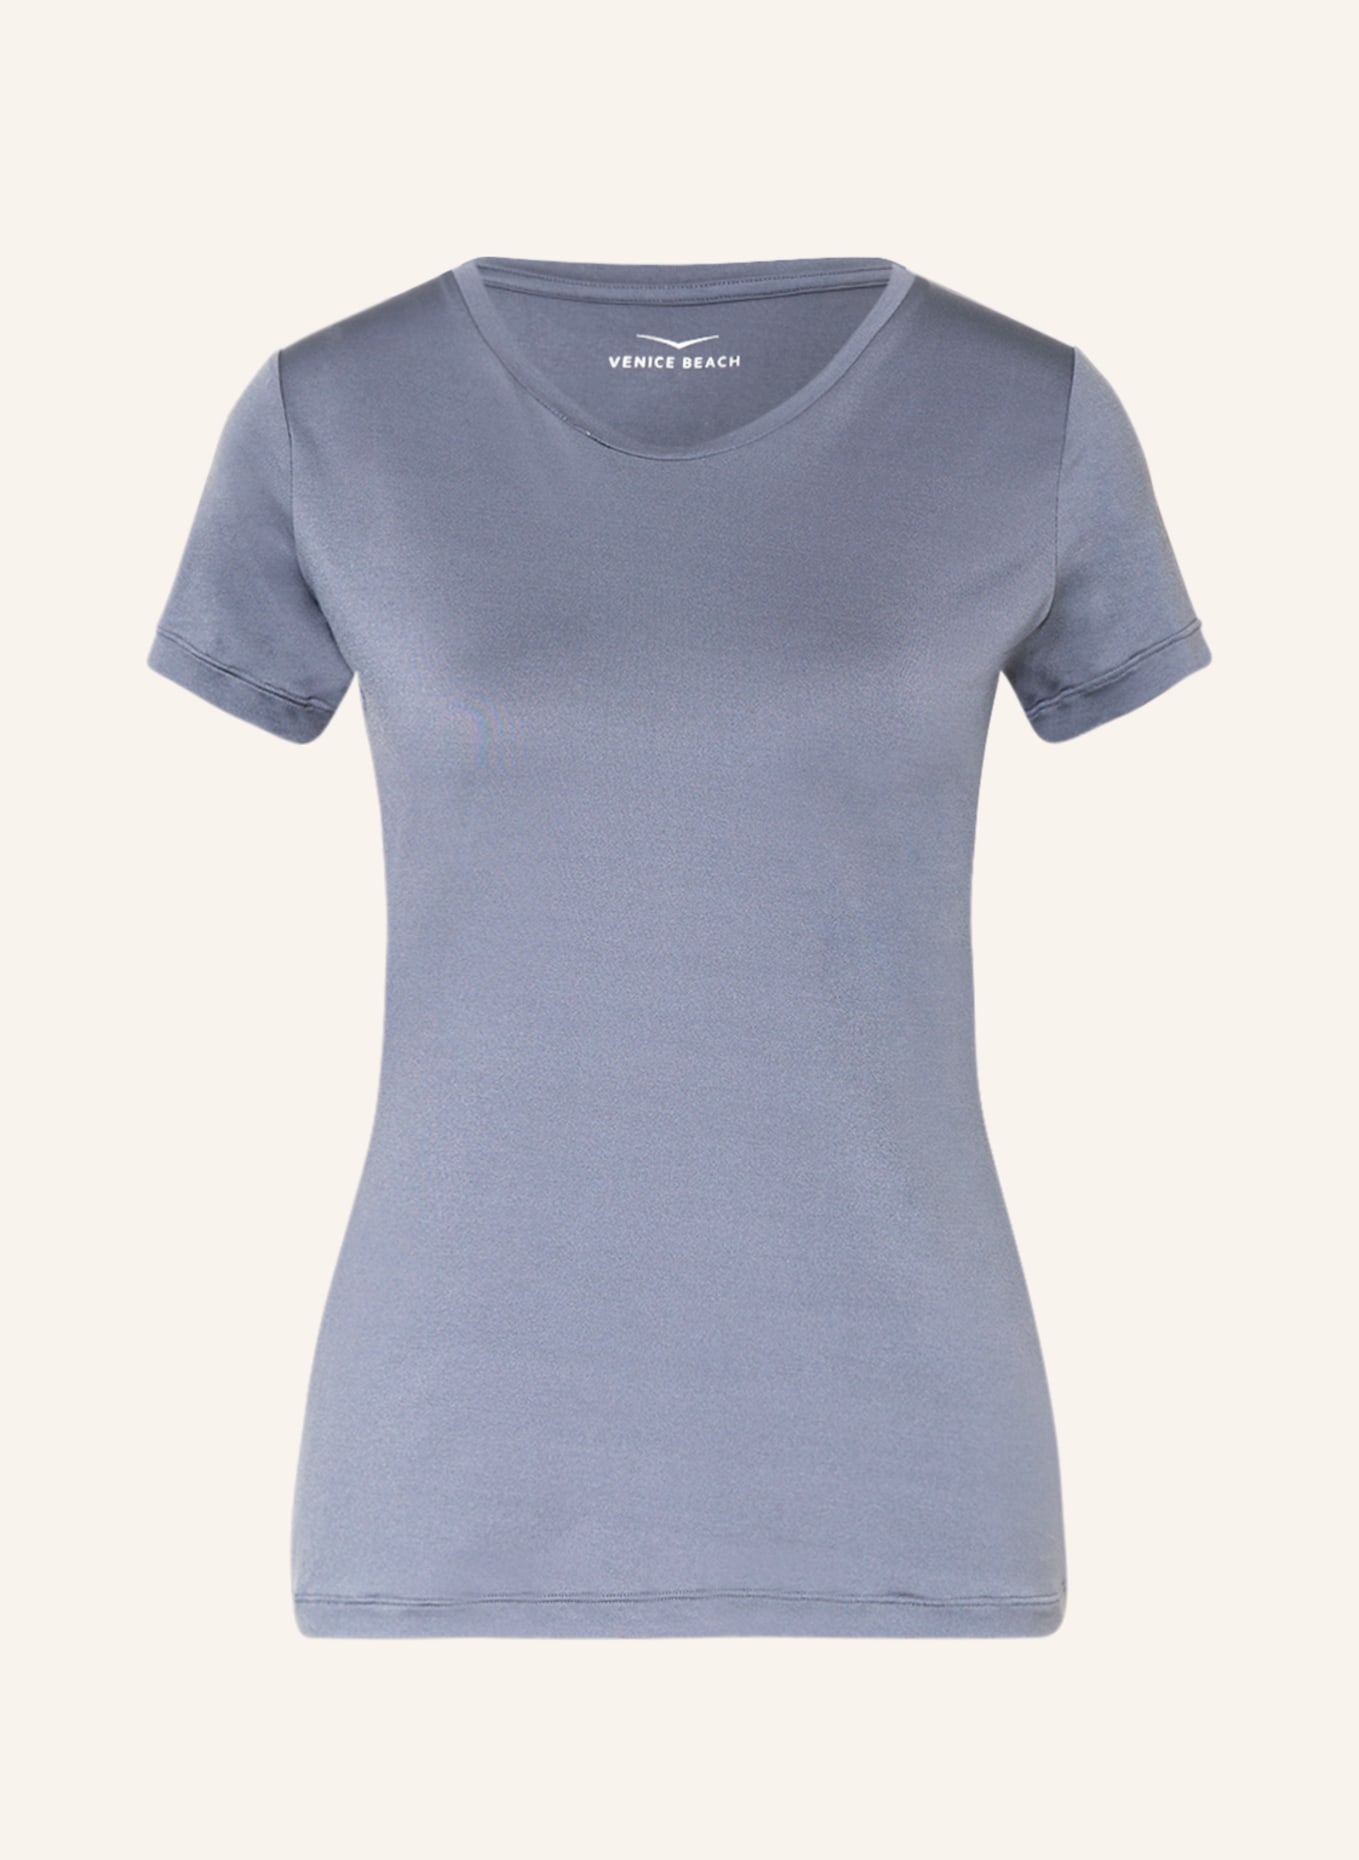 VENICE BEACH T-Shirt DEANNA, Farbe: BLAUGRAU (Bild 1)